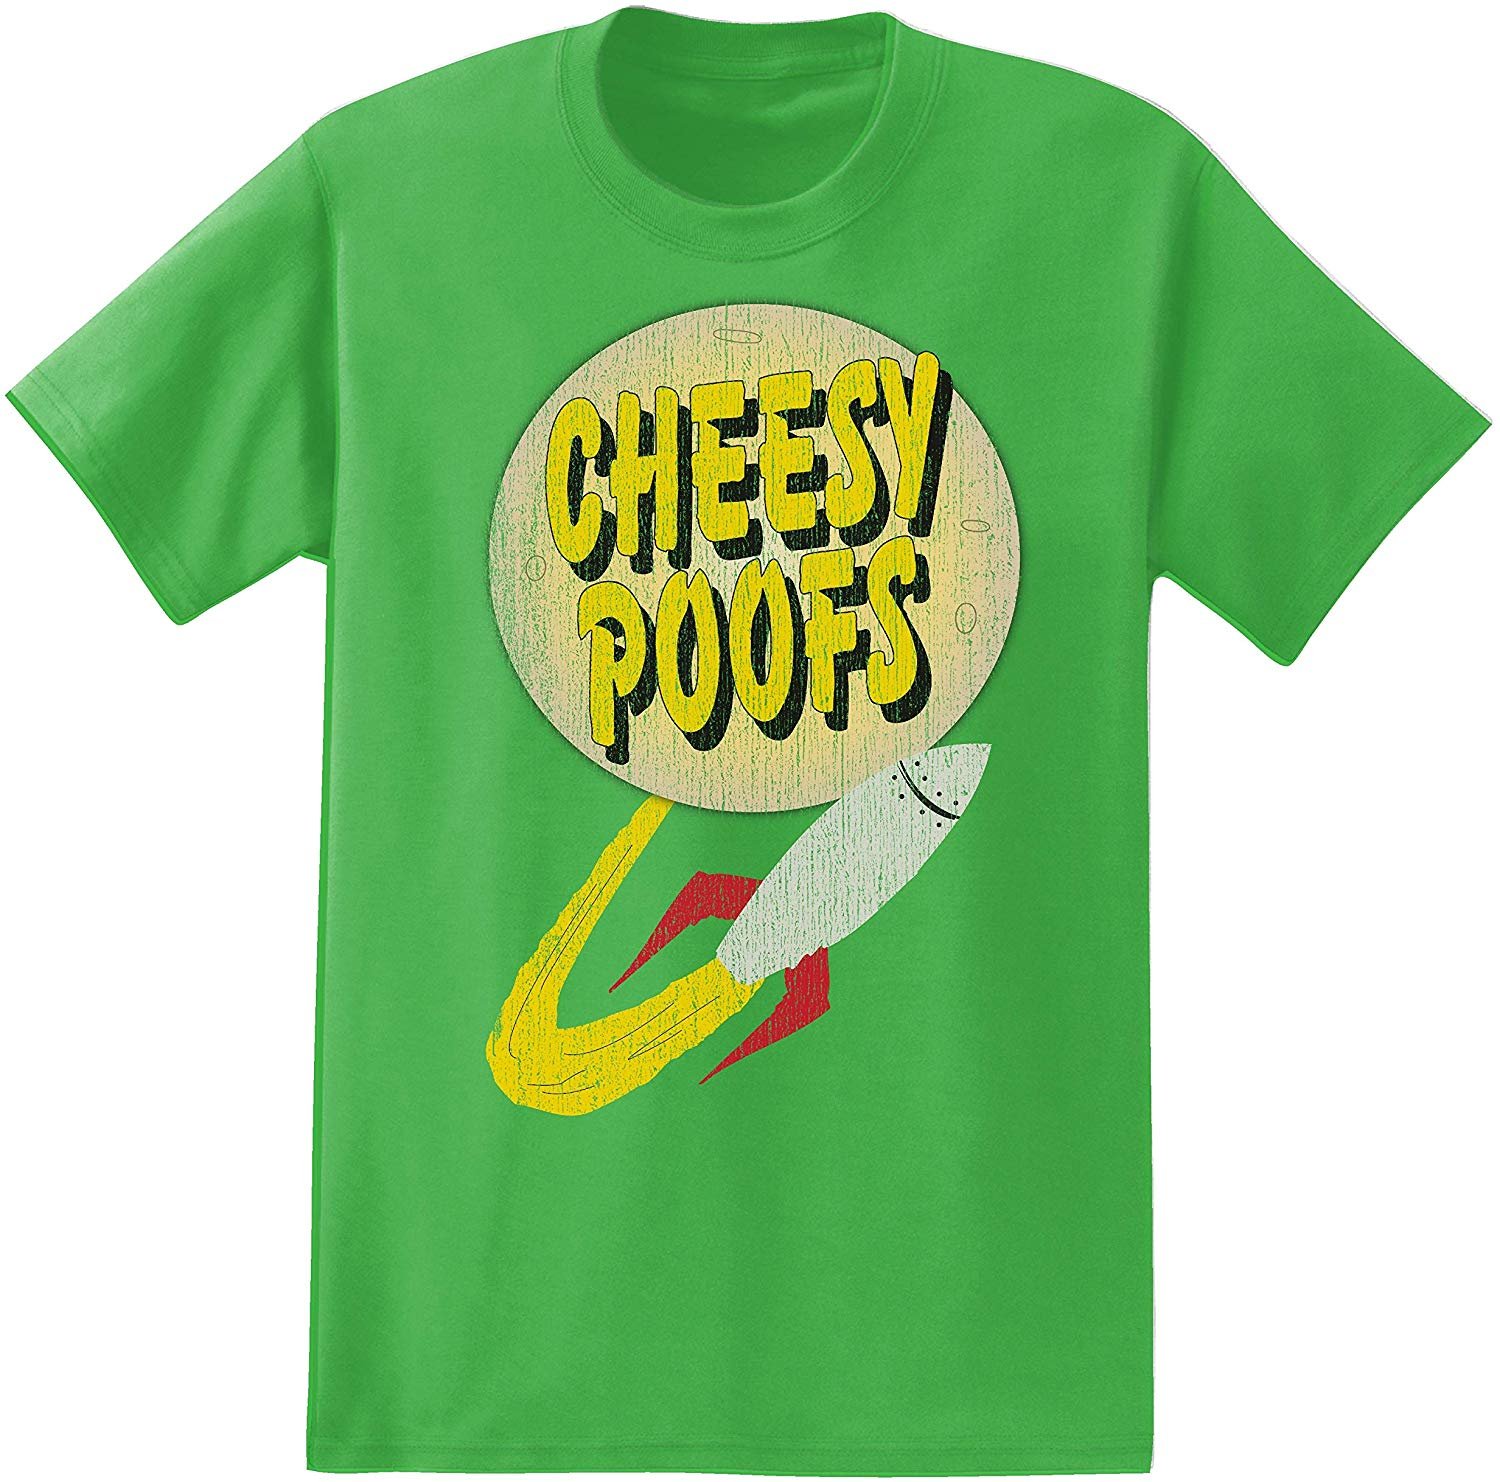 South Park Mens Logo Shirt - Cartman, Kenny, Kyle & Stan Tee - Classic T- Shirt